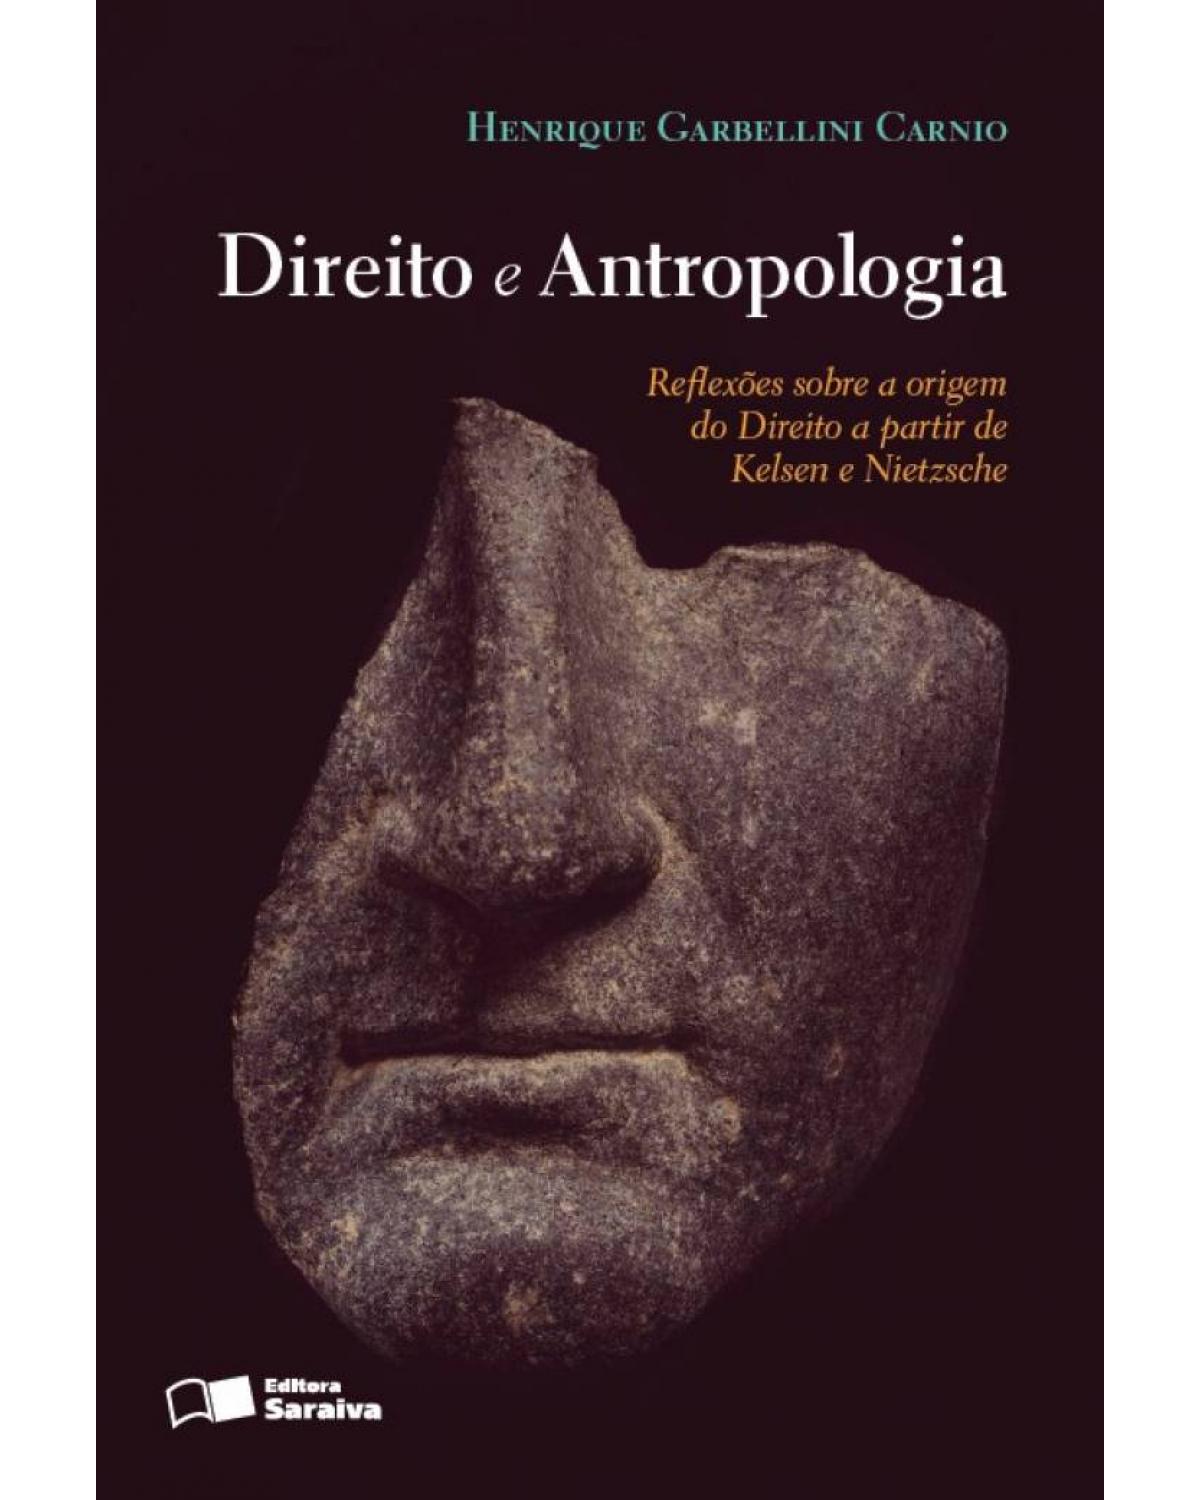 Direito e antropologia - reflexões sobre a origem do direito a partir de Kelsen e Nietzsche - 1ª Edição | 2013